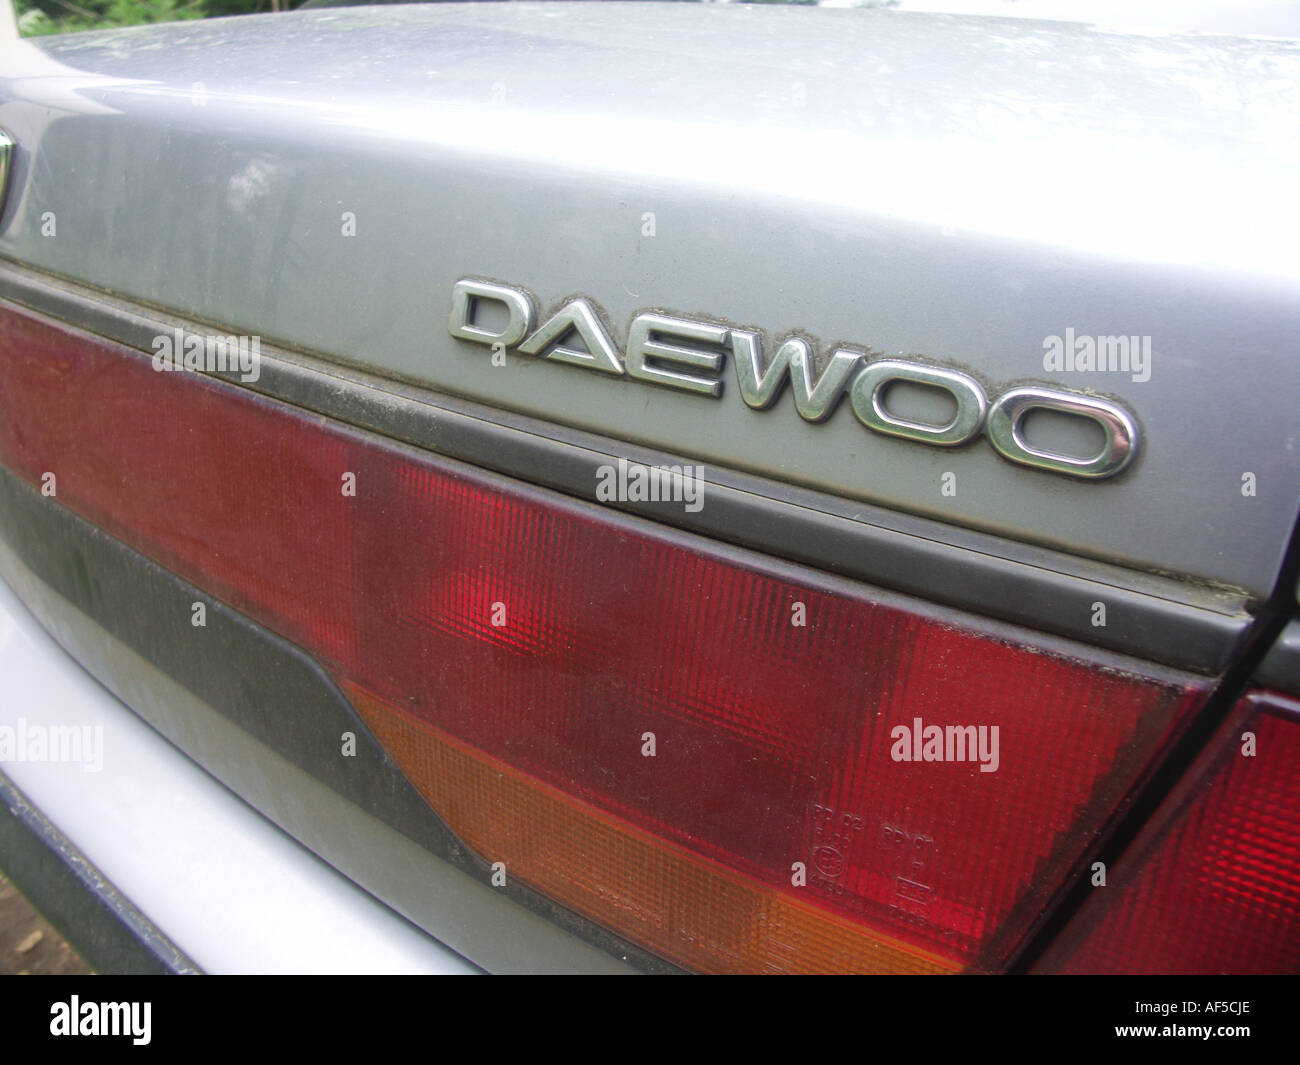 Daewoo car badge logo close up on car boot Stock Photo